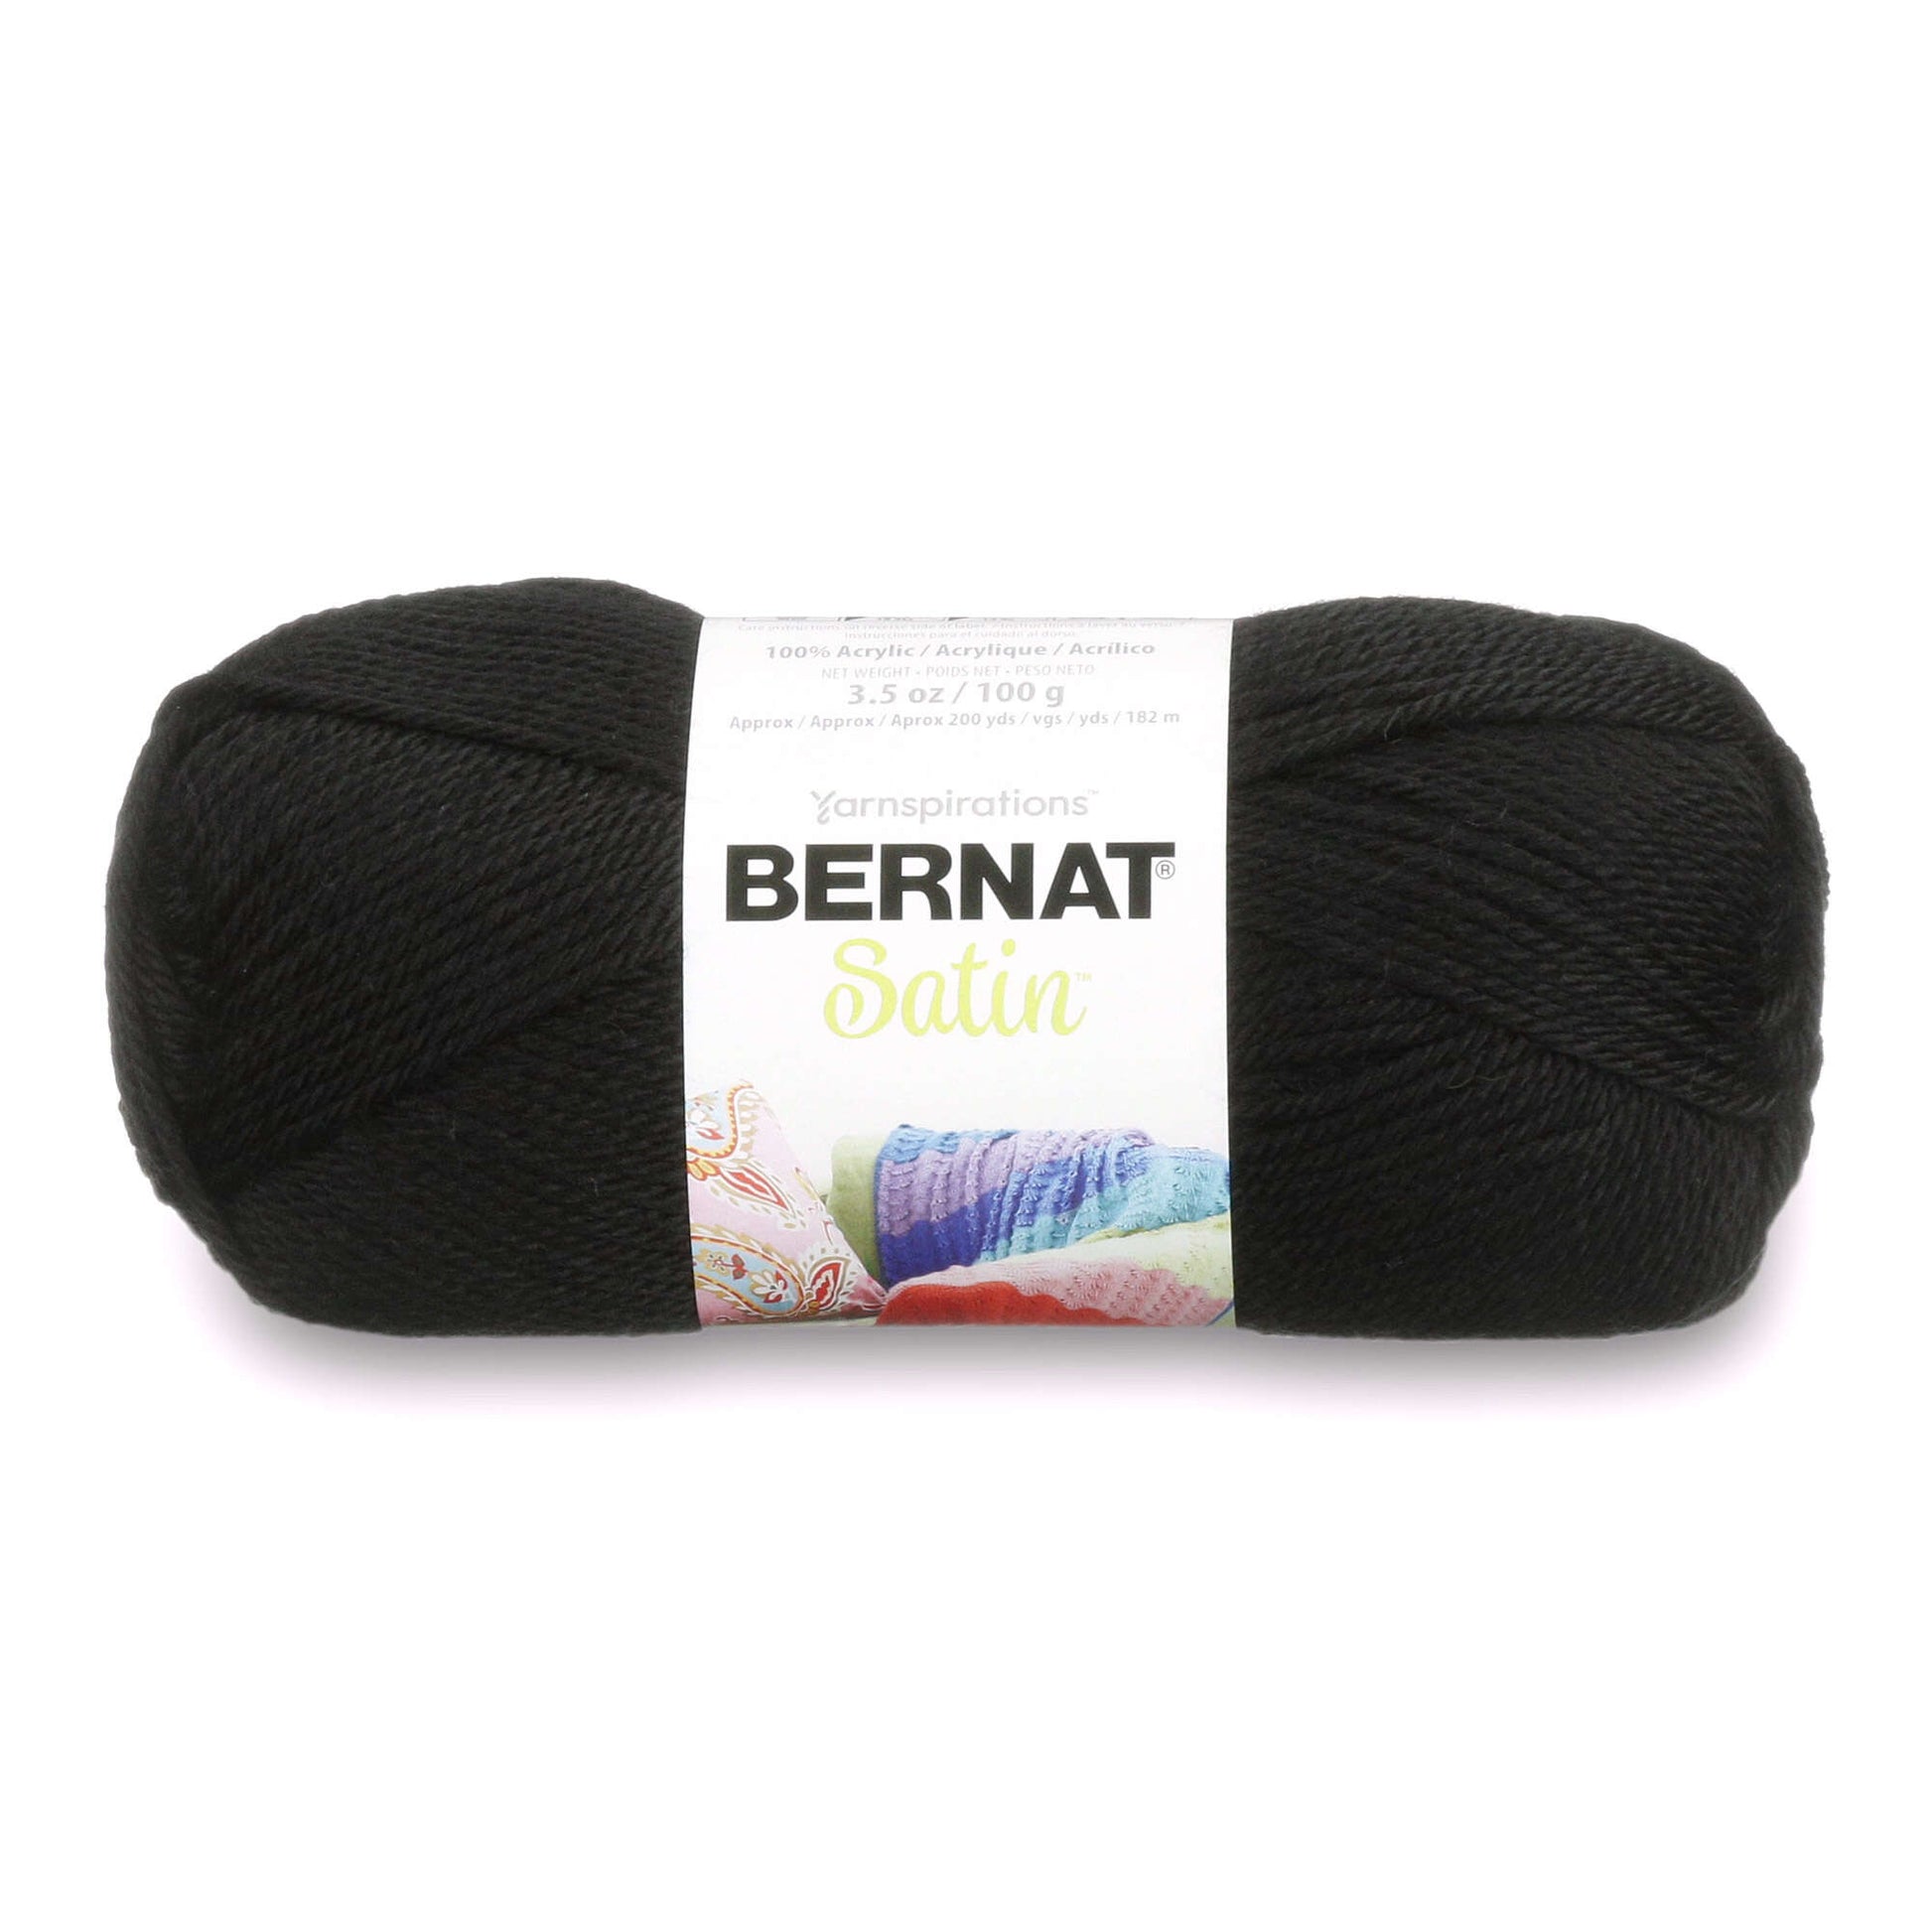 Bernat Satin Yarn - Clearance Shades